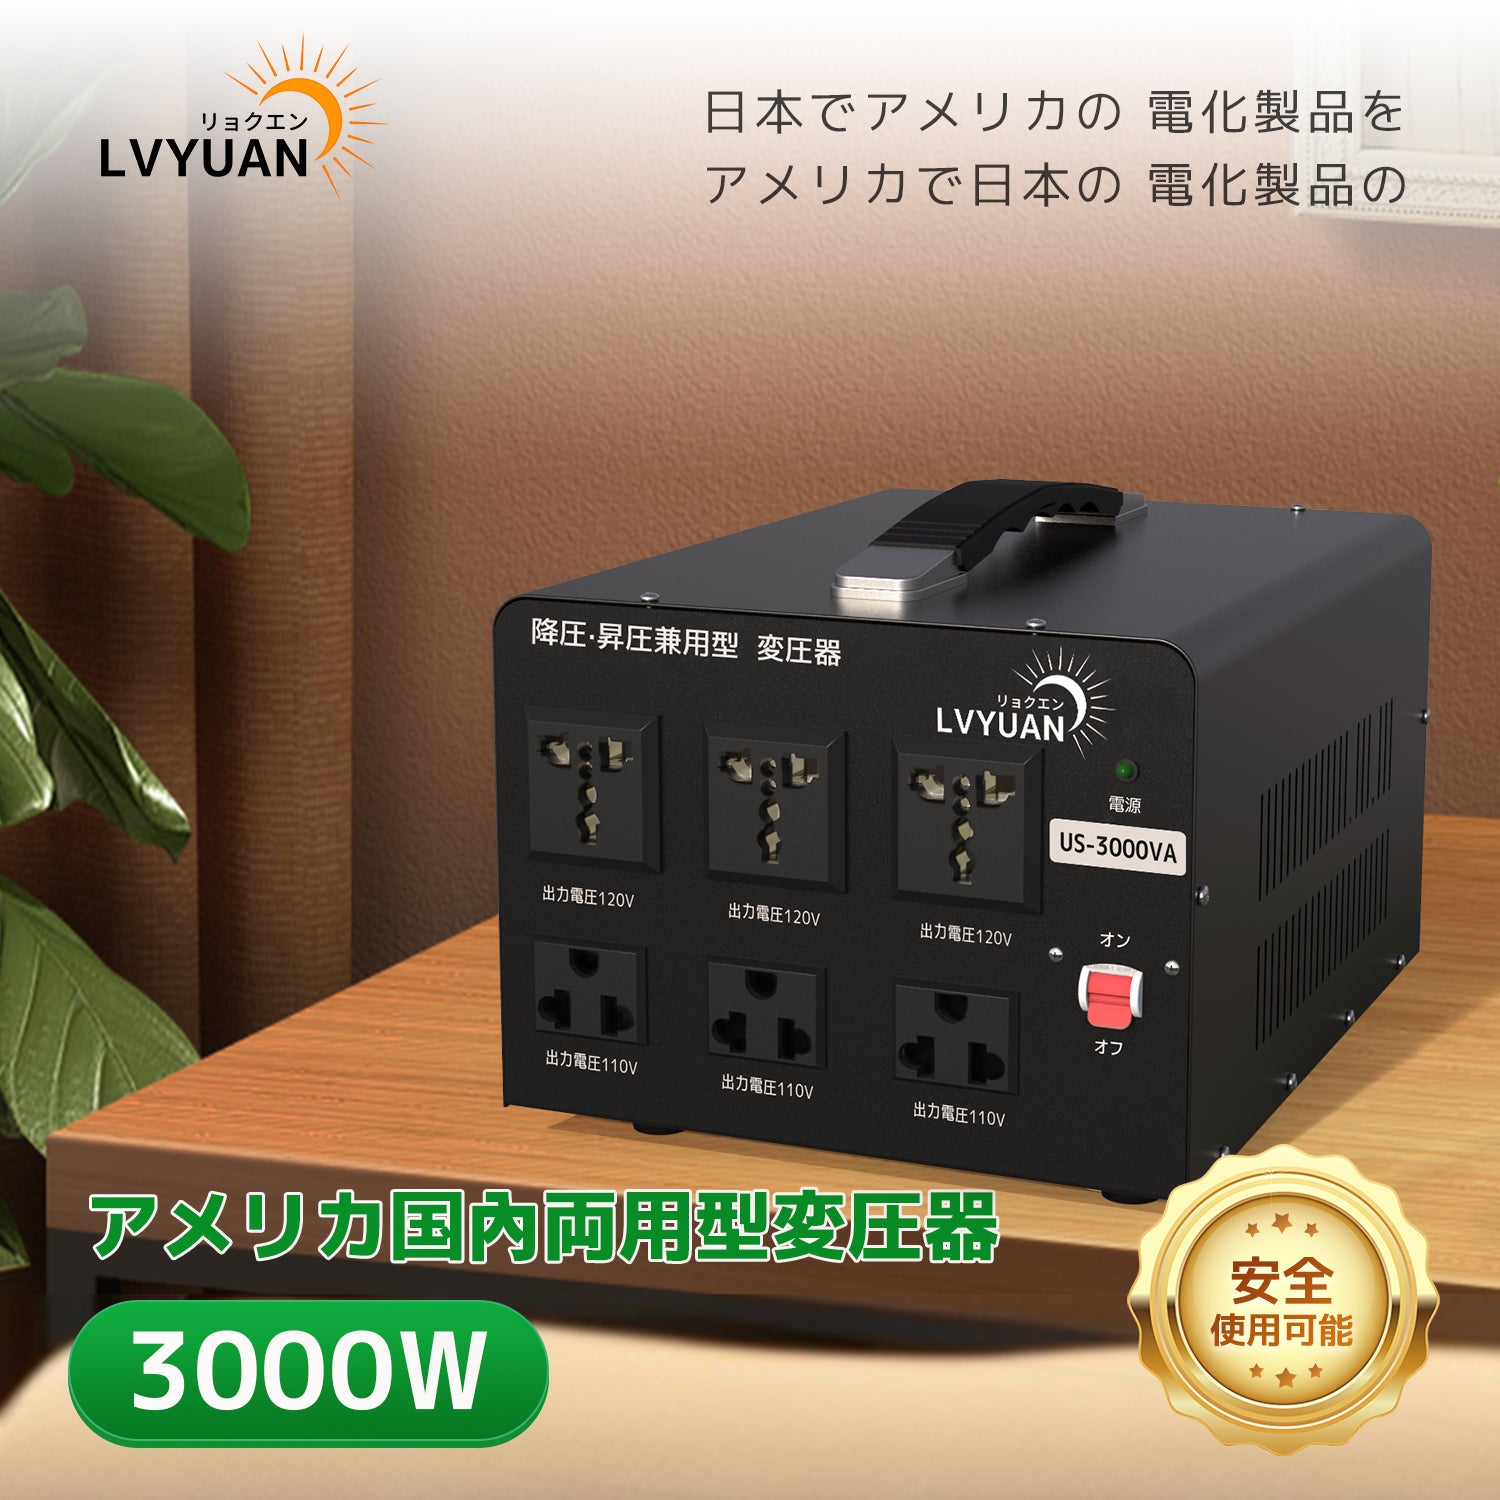 LVYUAN 海外国内両用型変圧器 3000W 降圧・昇圧 AC100V ~ 110V⇄110V